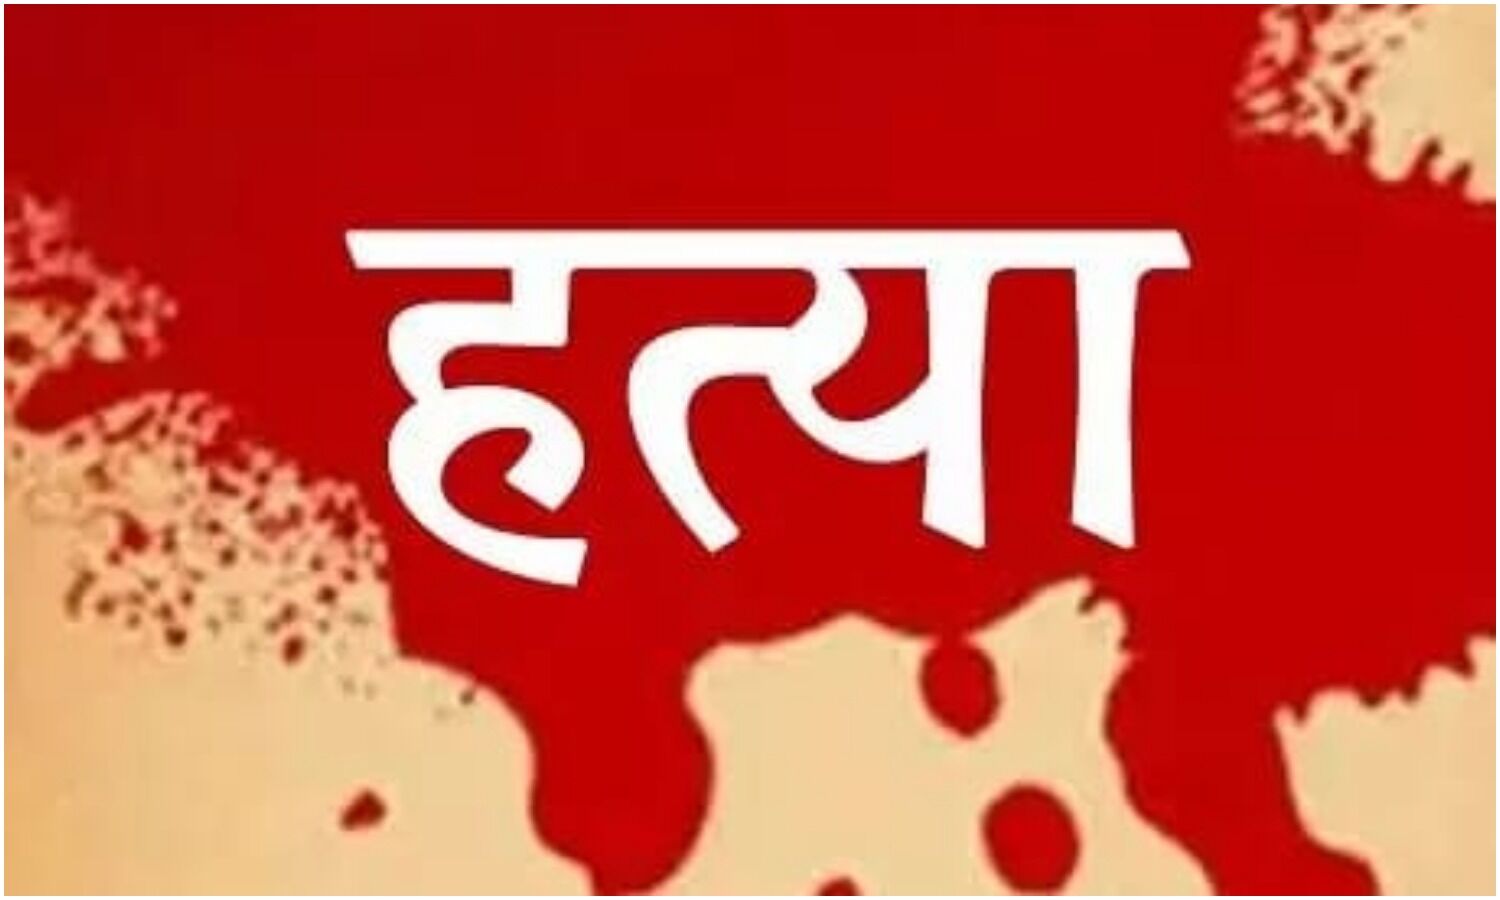 NCRB Report : प्रेम संबंध की वजह से उत्तर प्रदेश और गुजरात में सबसे अधिक हत्याएं, अवैध रिश्ते के कारण महाराष्ट्र में सबसे ज्यादा मर्डर